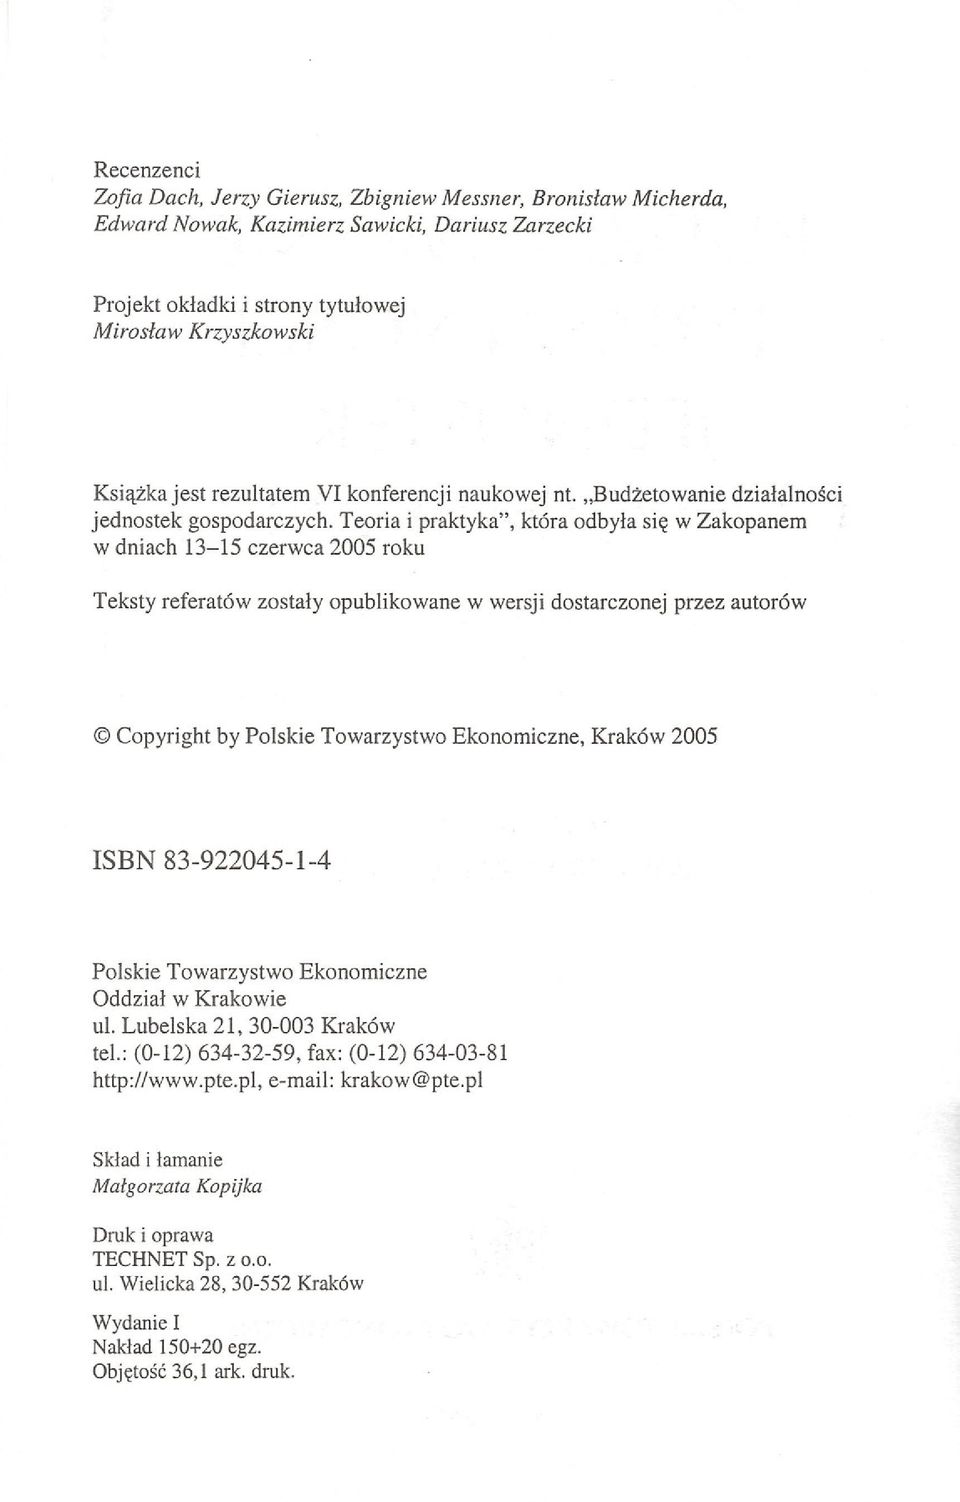 Teoria i praktyka", która odbyła się w Zakopanem w dniach 13-15 czerwca 2005 roku Teksty referatów zostały opublikowane w wersji dostarczonej przez autorów Copyright by Polskie Towarzystwo